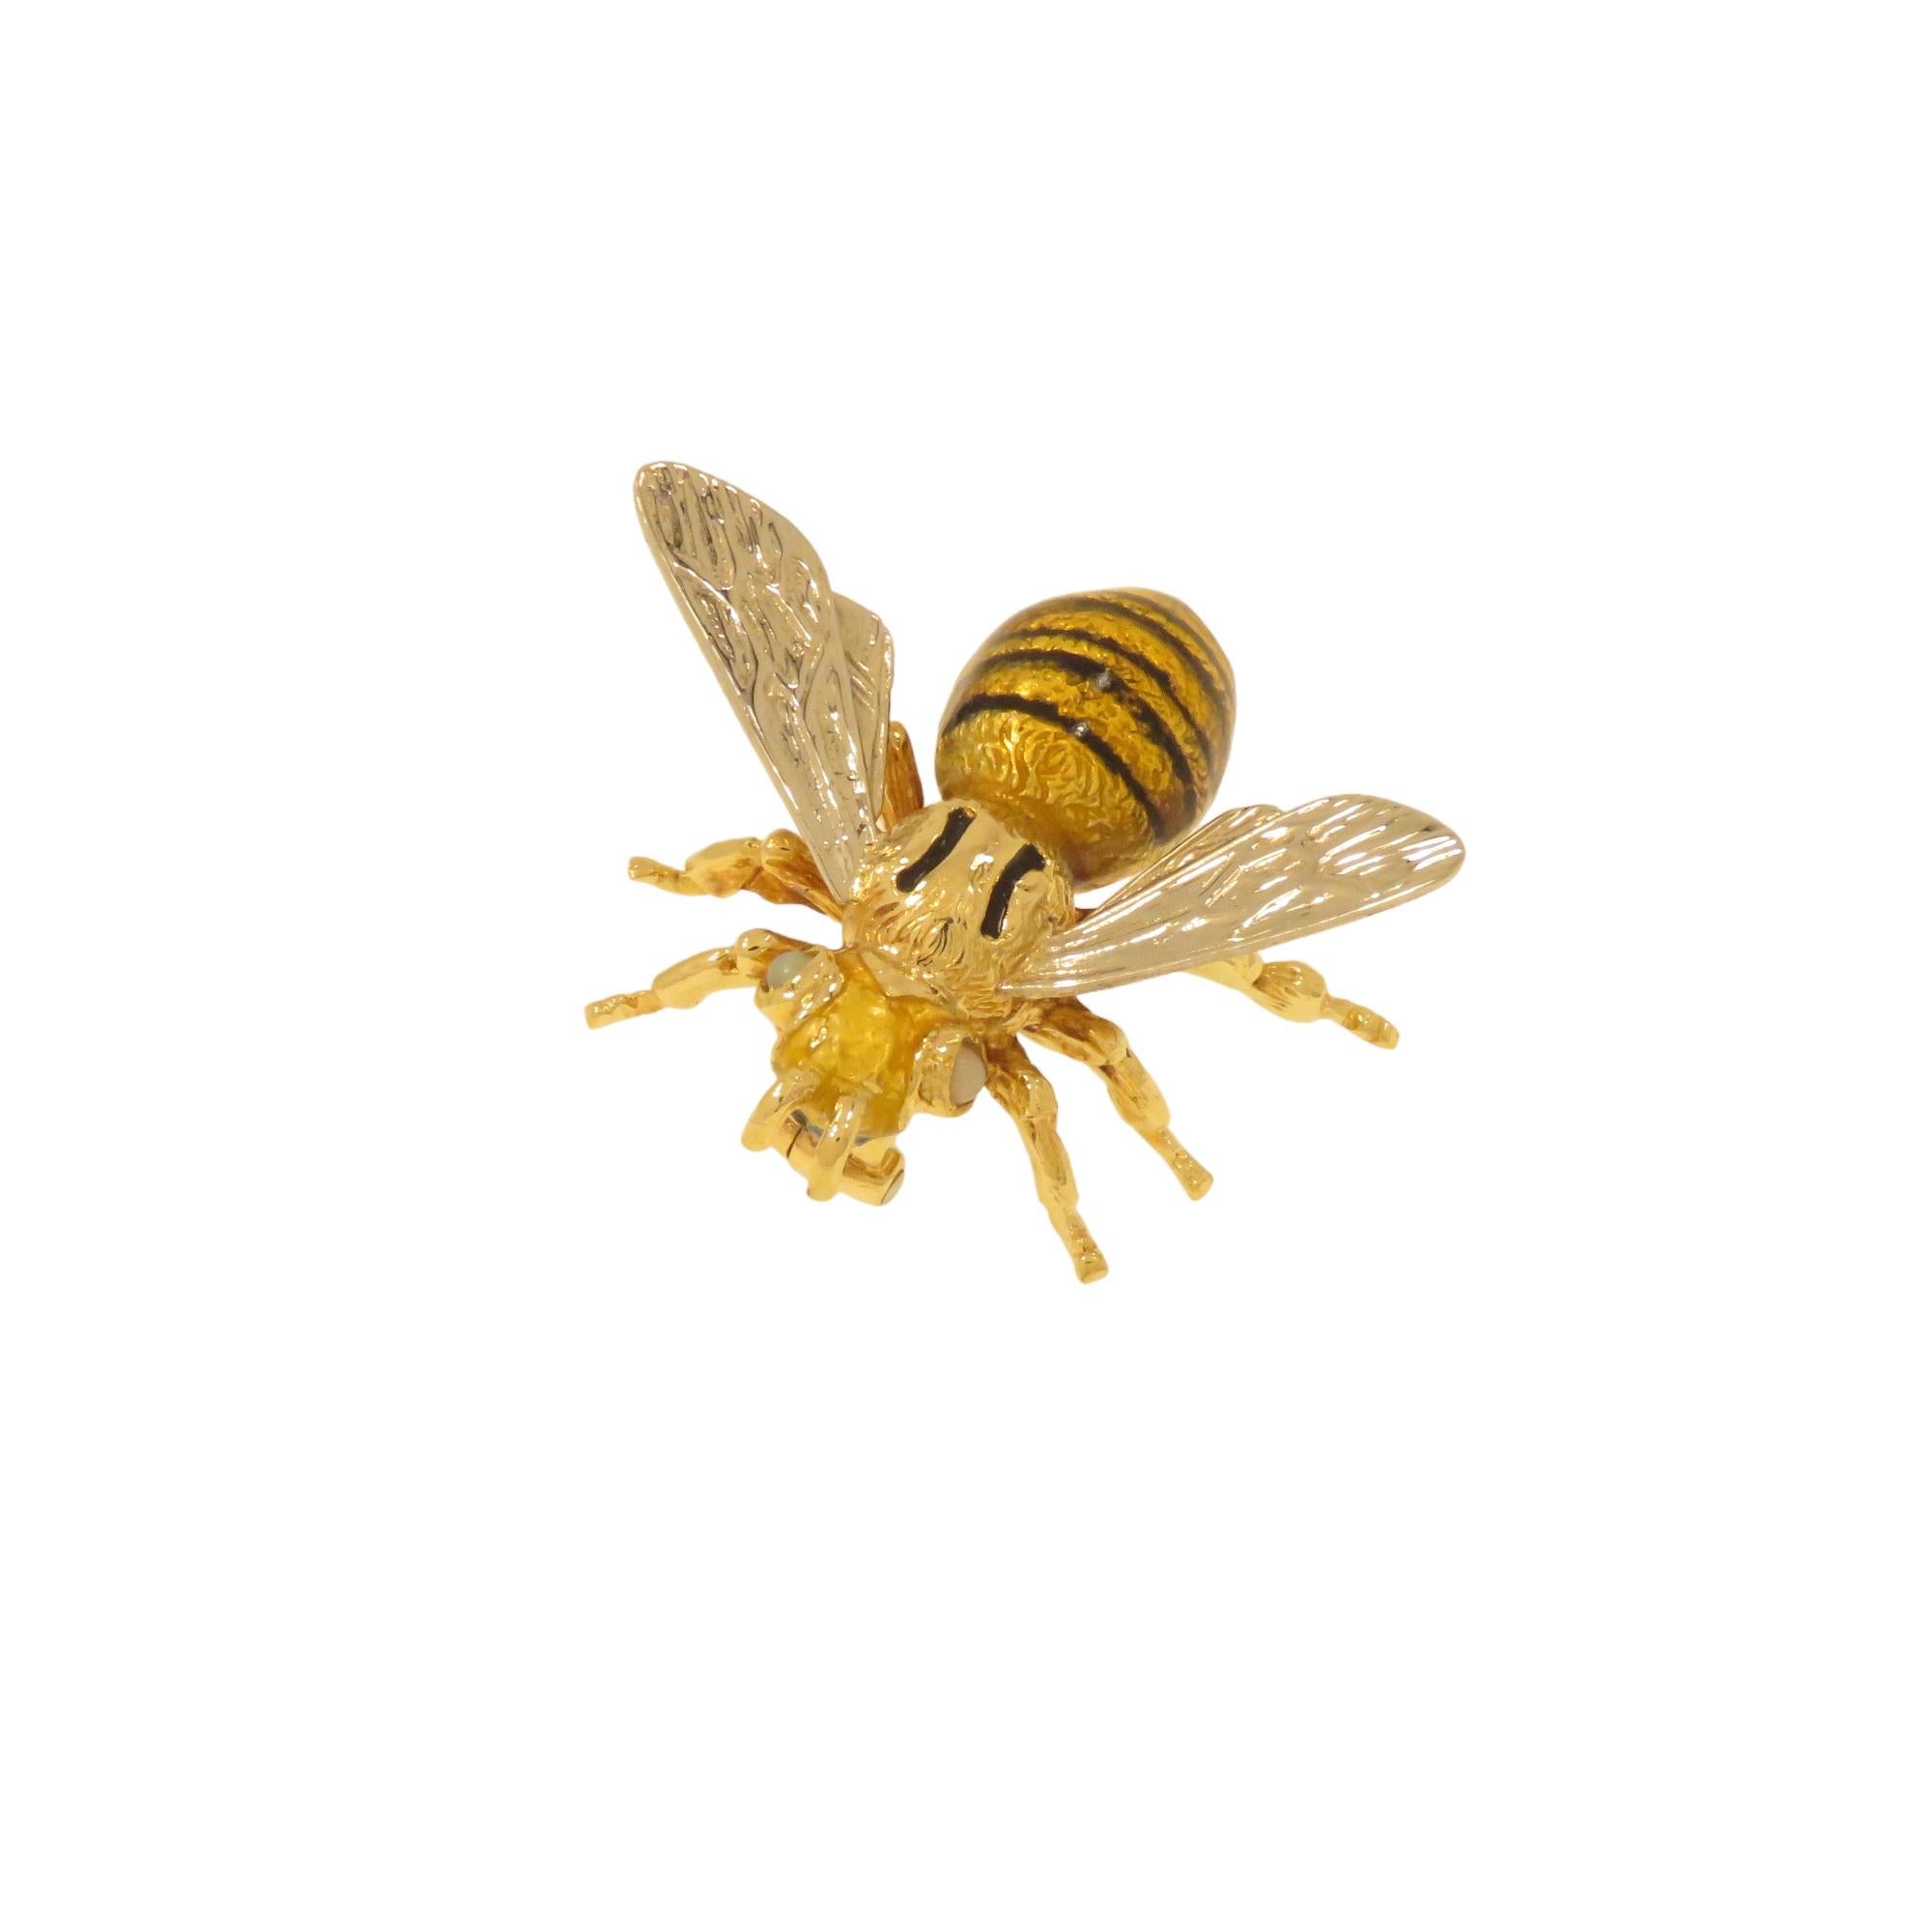 Questa elegante spilla realizzata a mano in Italia tra il 1960 e 1970 raffigura un'ape. Il corpo è in oro giallo 18 carati con smaltatura a fuoco e le ali in oro bianco sempre 18 carati. Negli occhi sono incastonati due piccoli cabochon di